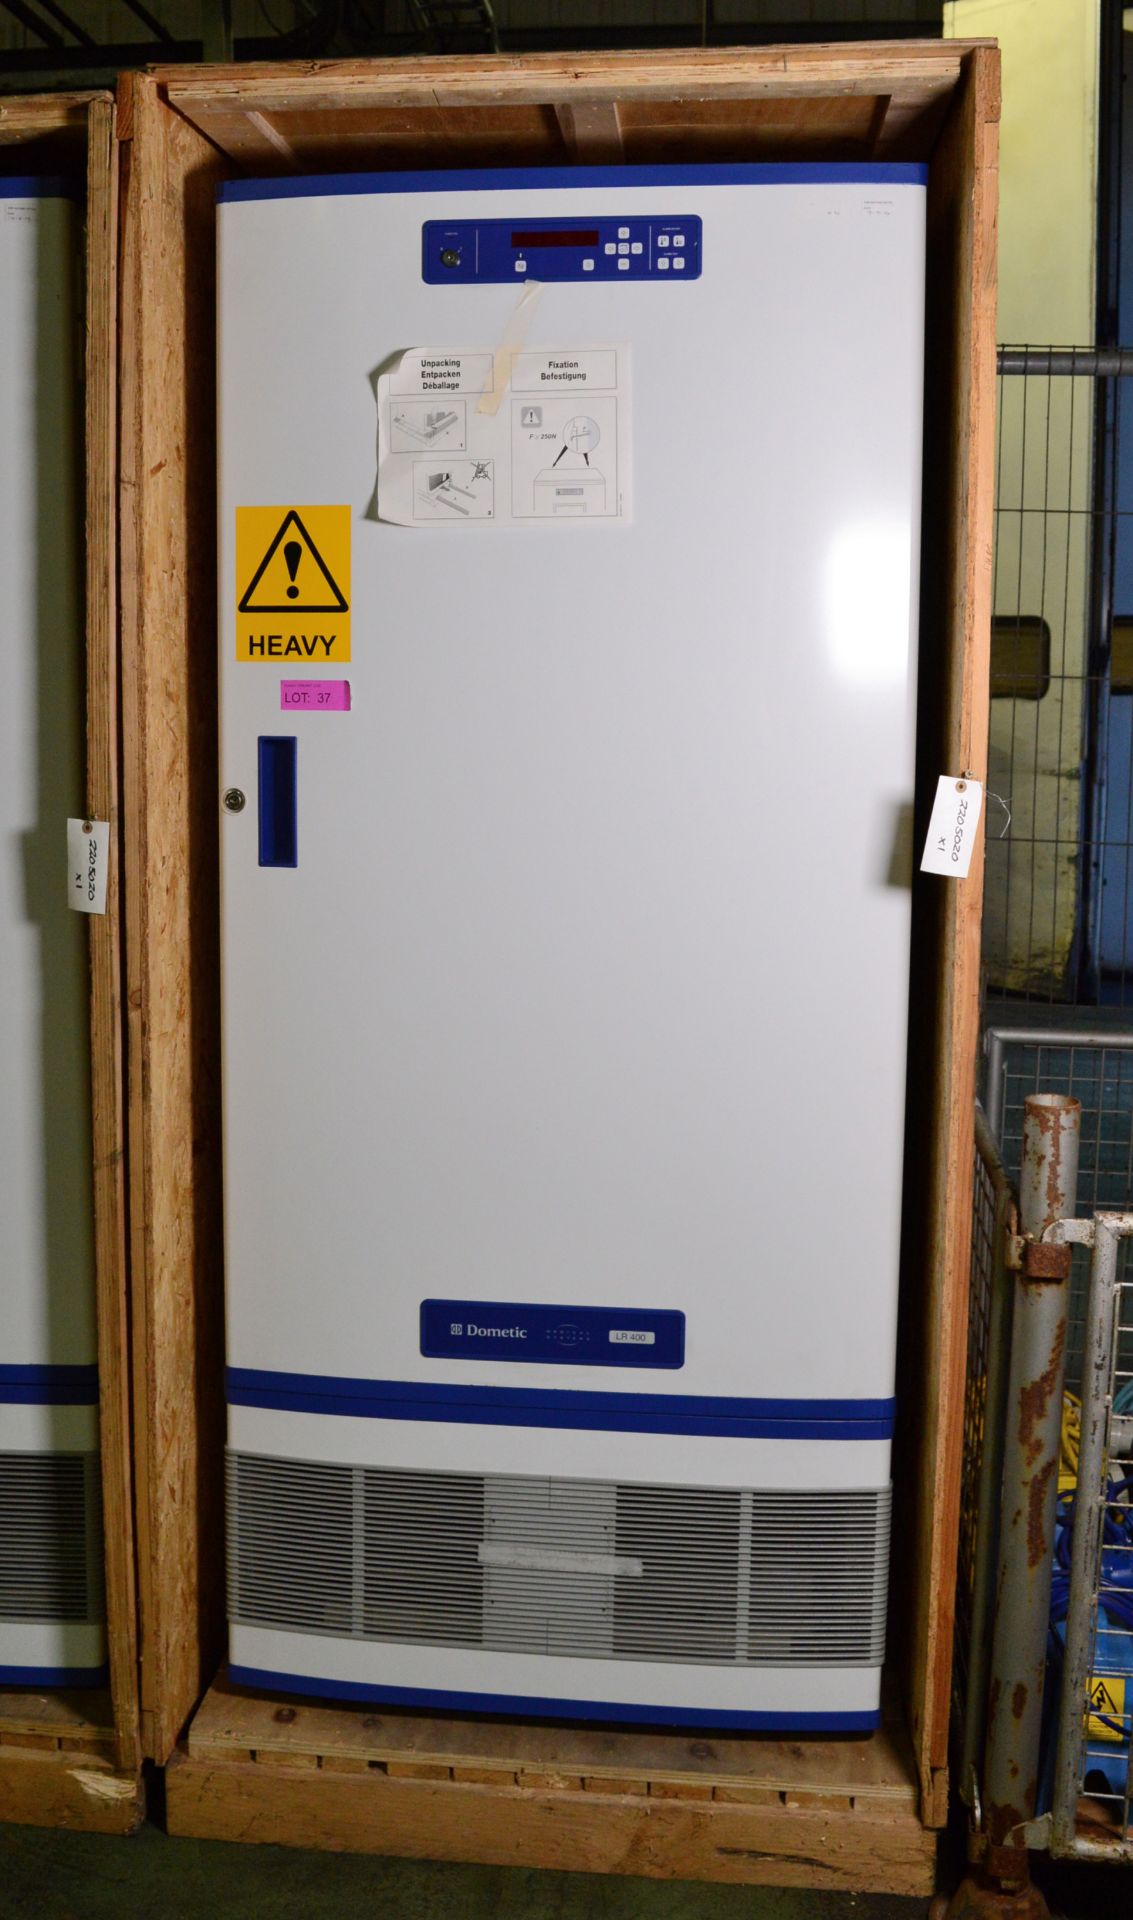 Dometic LR400 Laboratory Refrigerator W850 x D800 x H1920mm.